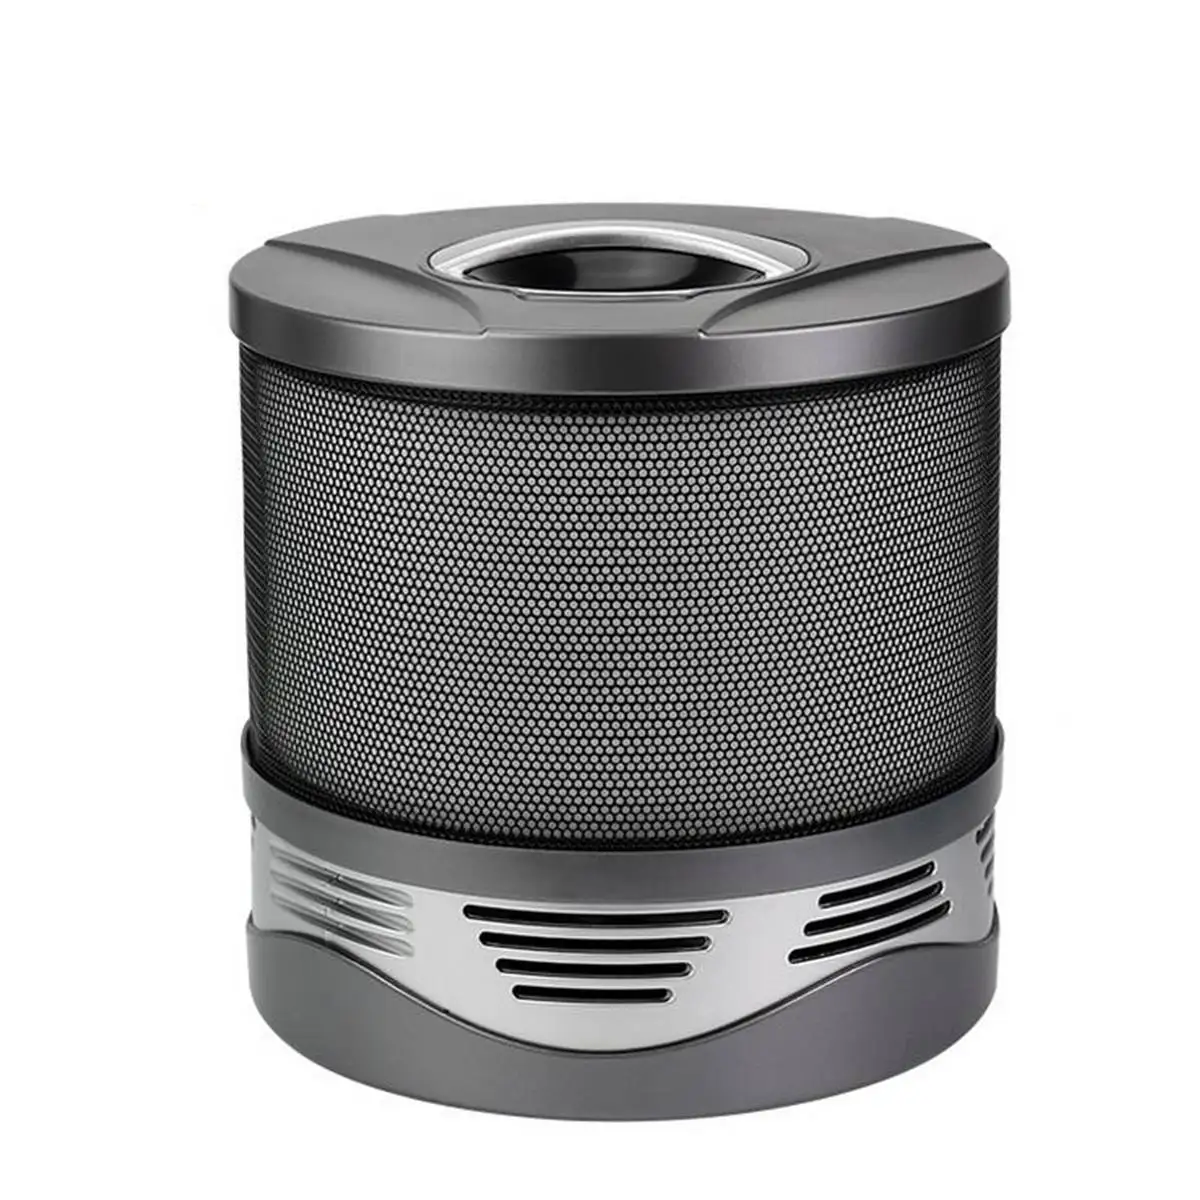 Тихий очиститель воздуха, стерилизатор мойка воздуха очиститель Lonizer HEPA фильтр пыли PM2.5 запах удаления дыма формальдегид домашний офис - Цвет: Черный